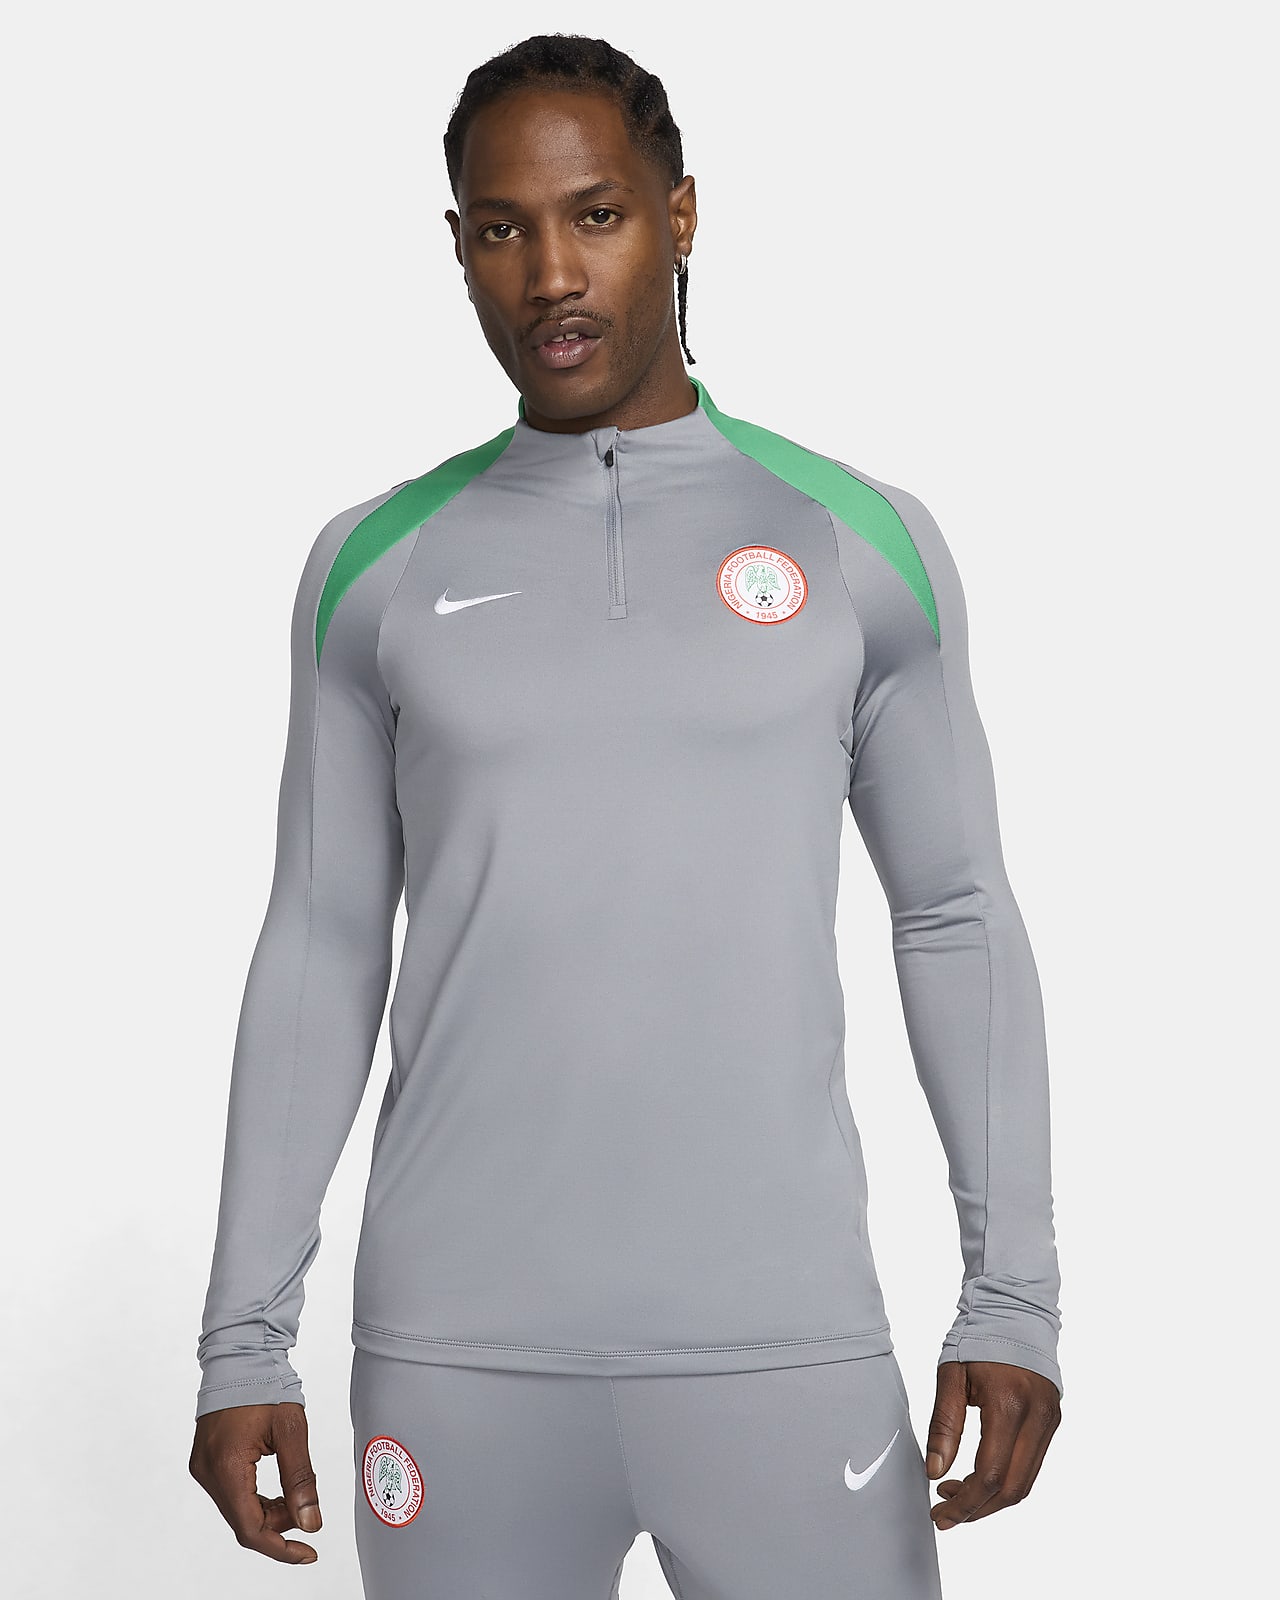 Nigeria Strike Nike Dri-FIT fotballtreningsoverdel til herre